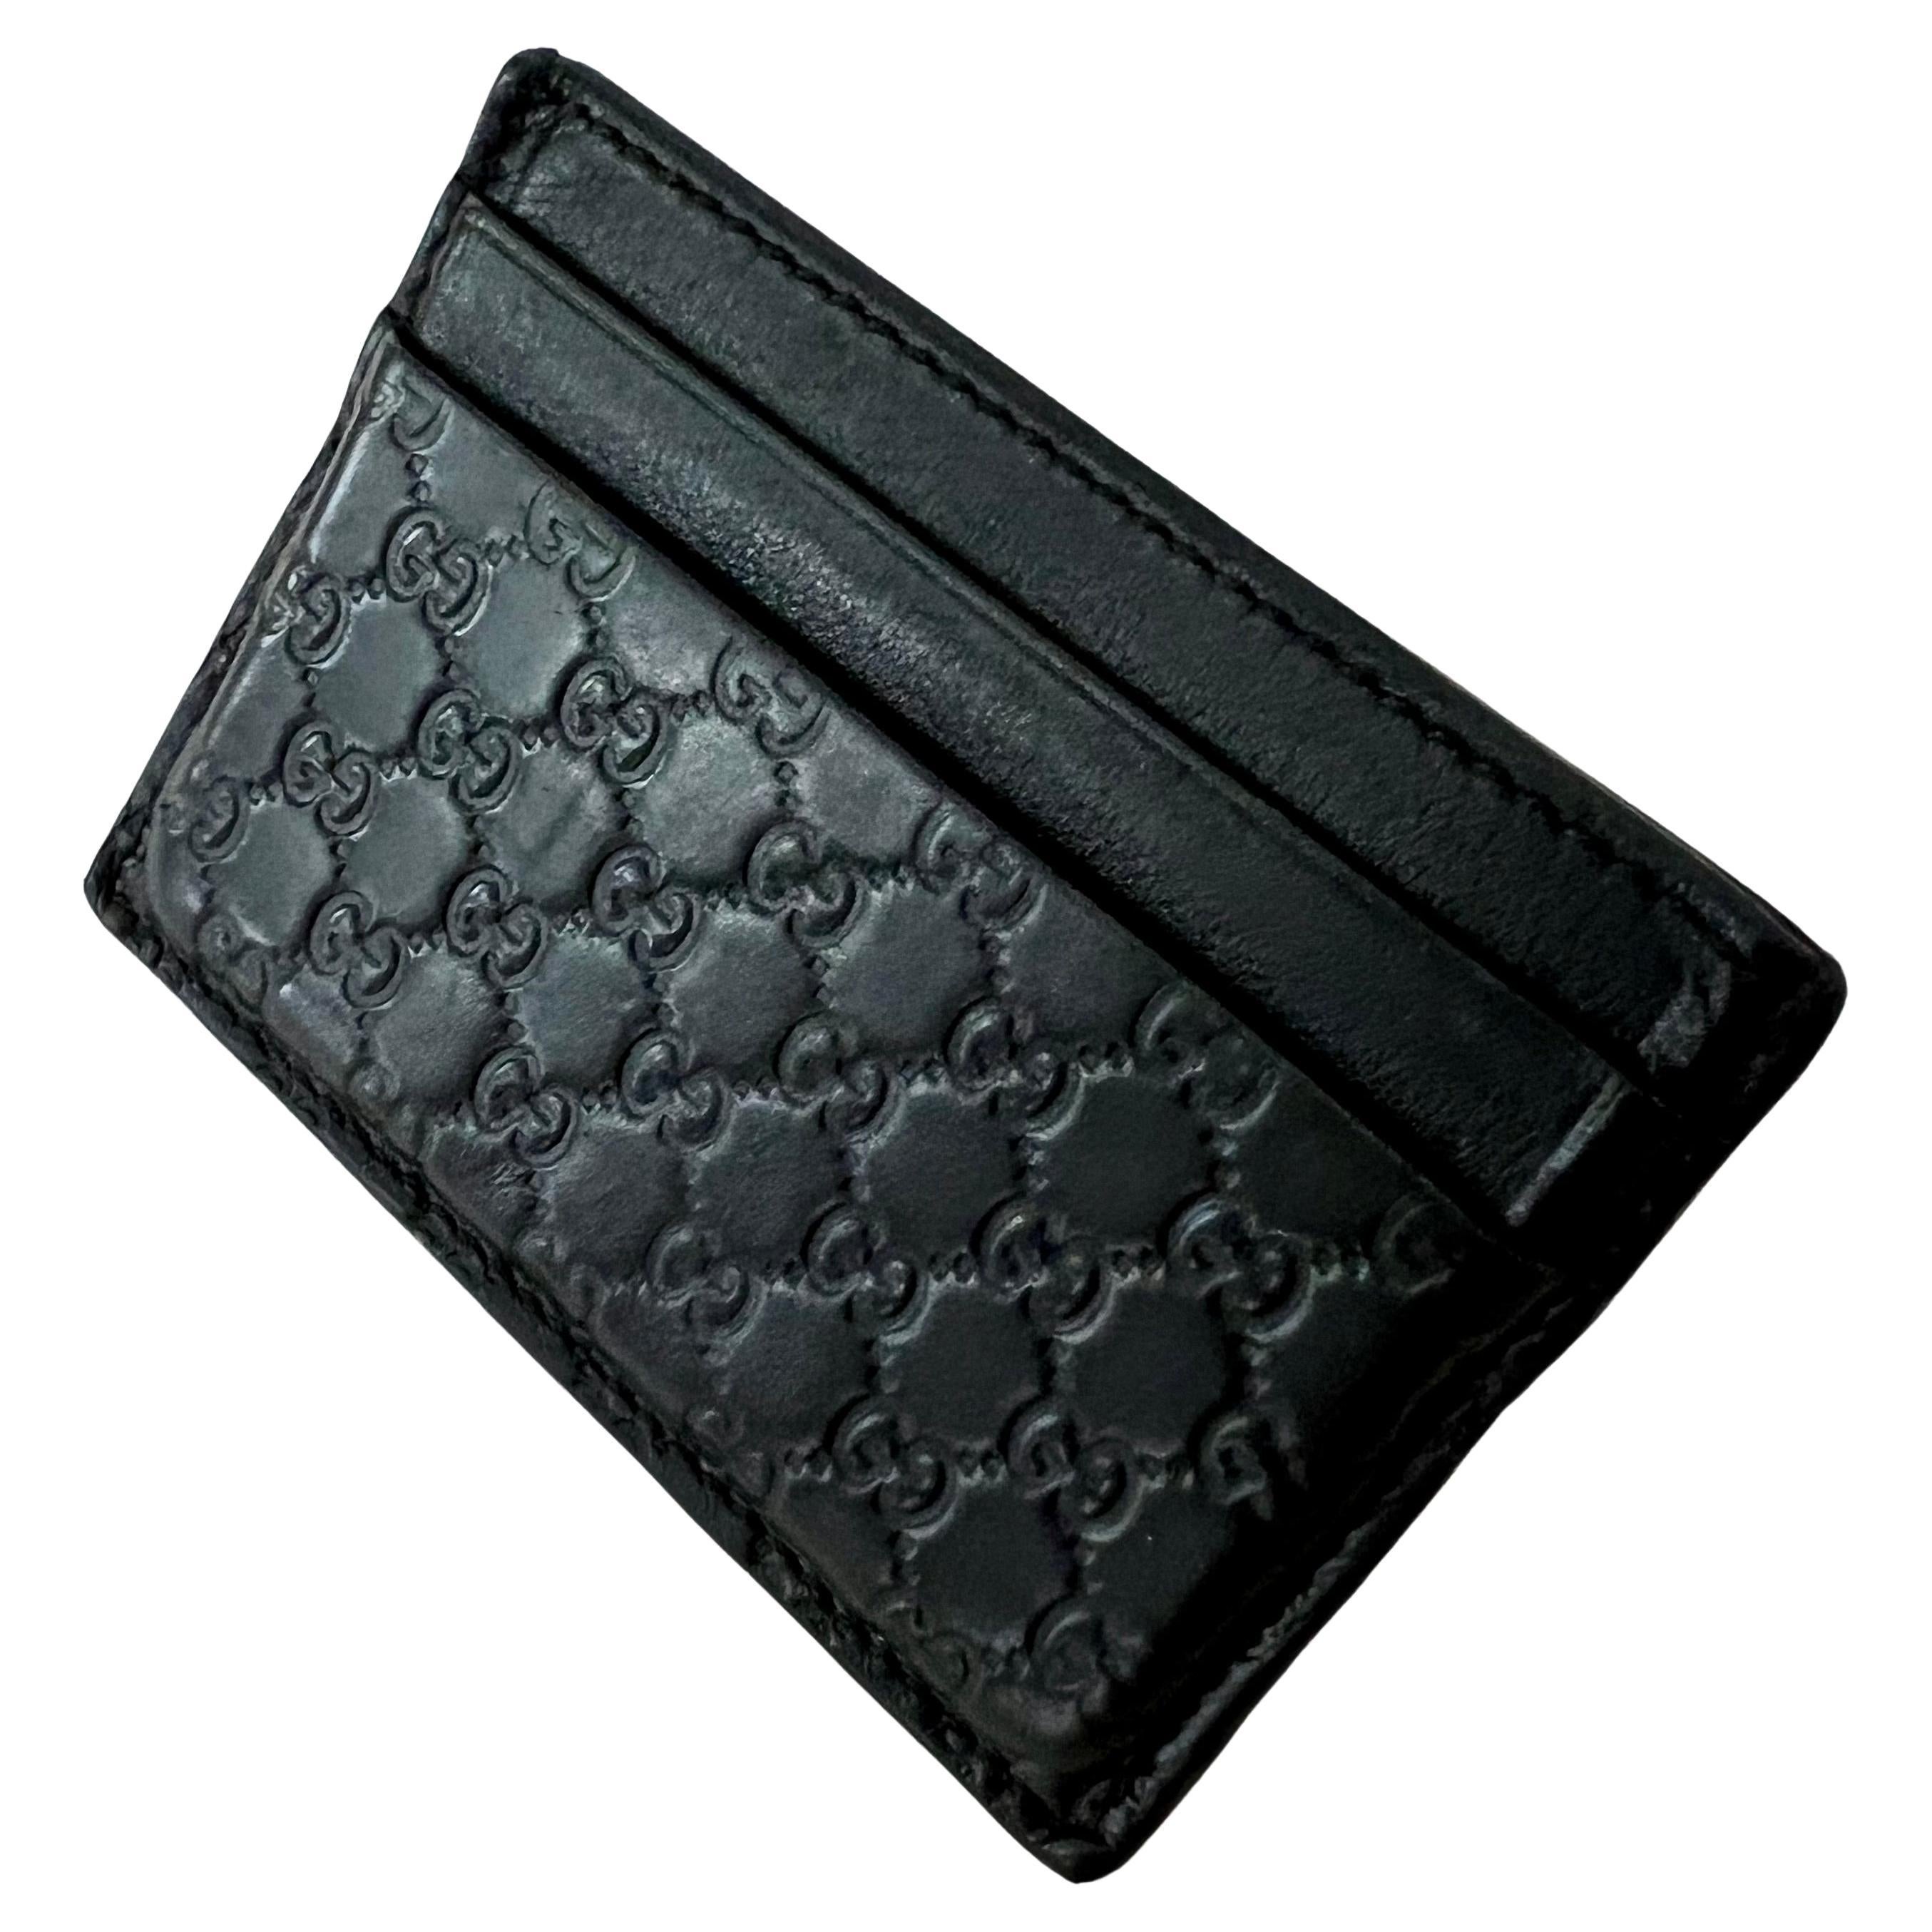 Portemonnaie und Kreditkartenaie von Gucci Italien mit Prägung